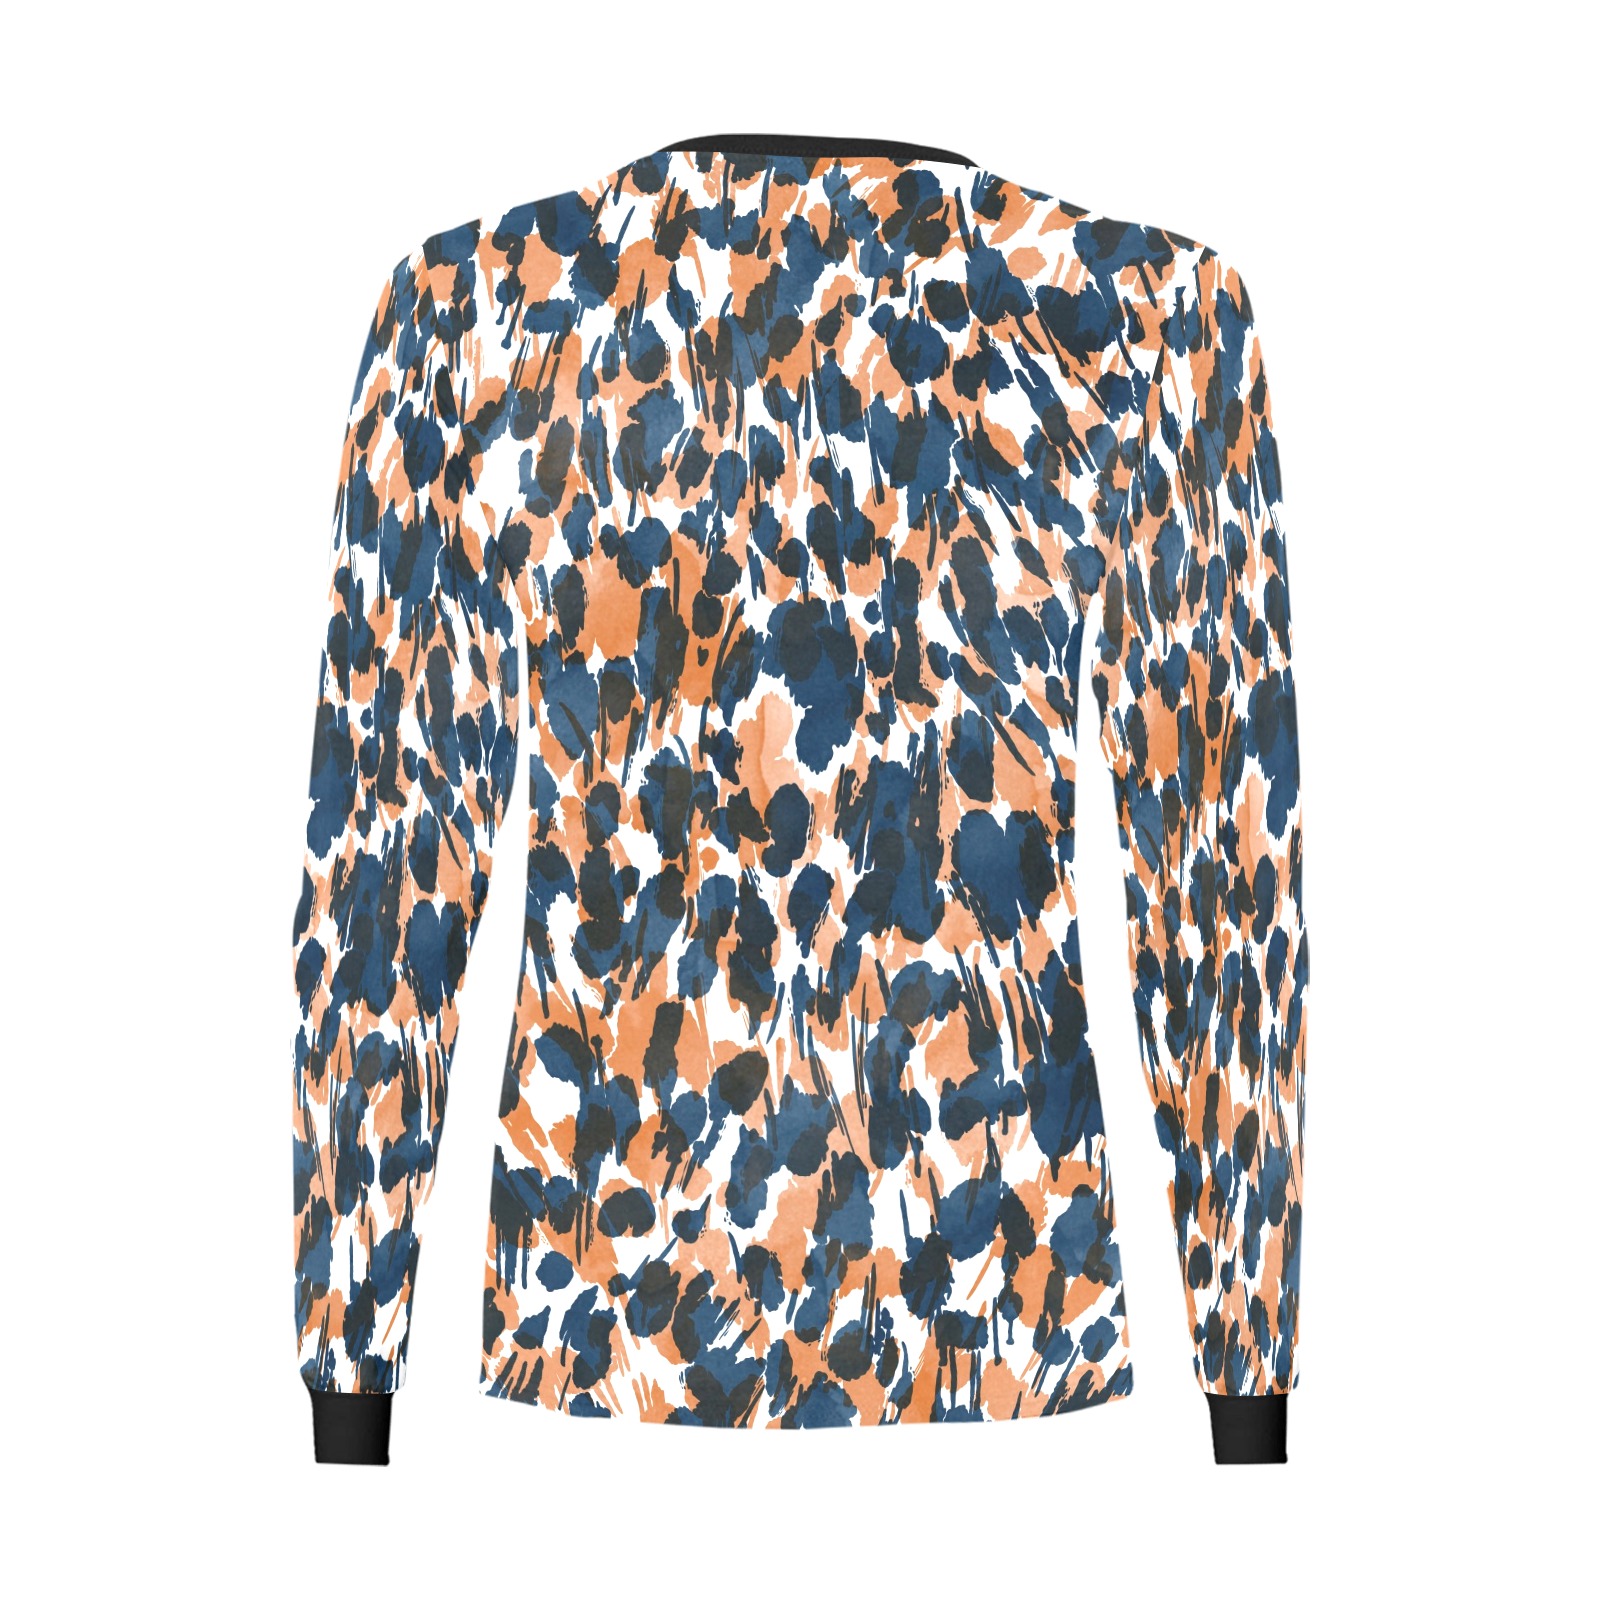 Dots brushstrokes animal print Women's All Over Print Long Sleeve T-shirt (Model T51)